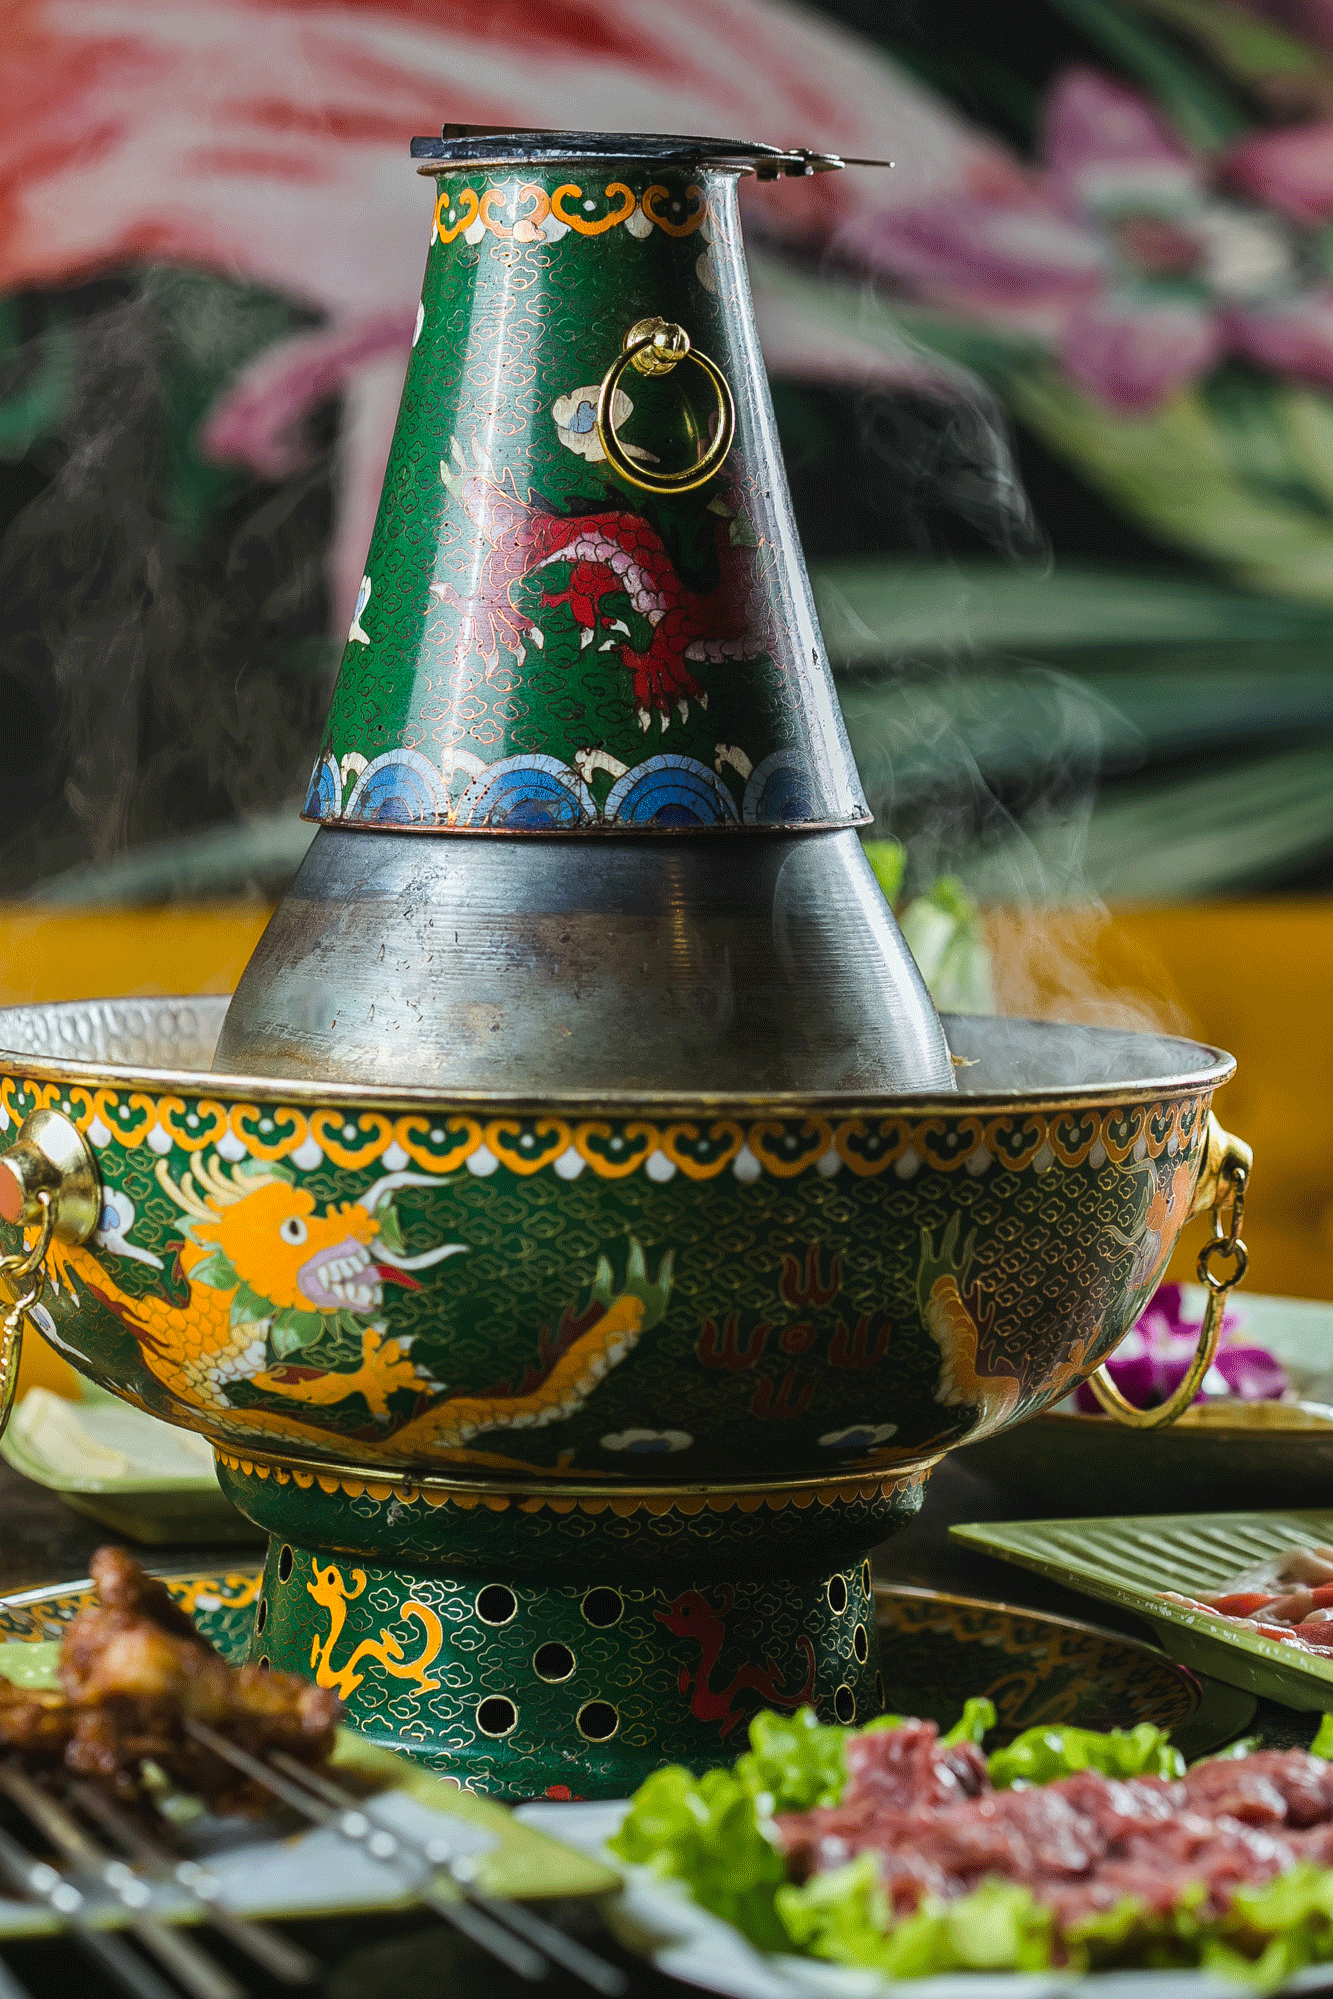 乌拉火锅是吉林的特色美食，名字来源于满语吉林乌拉